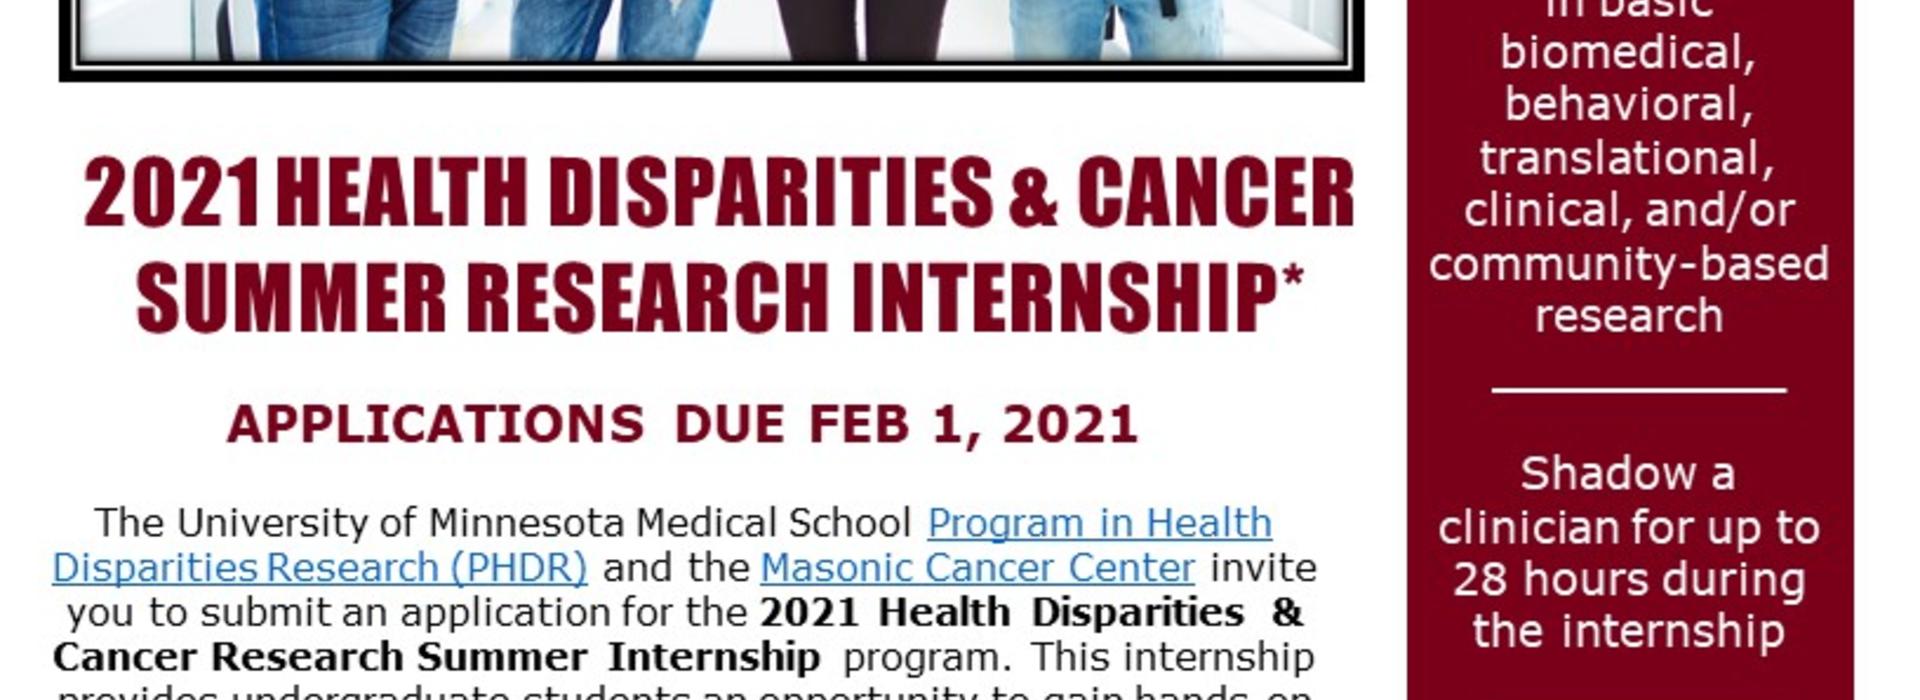 cancer disparities internship flyer